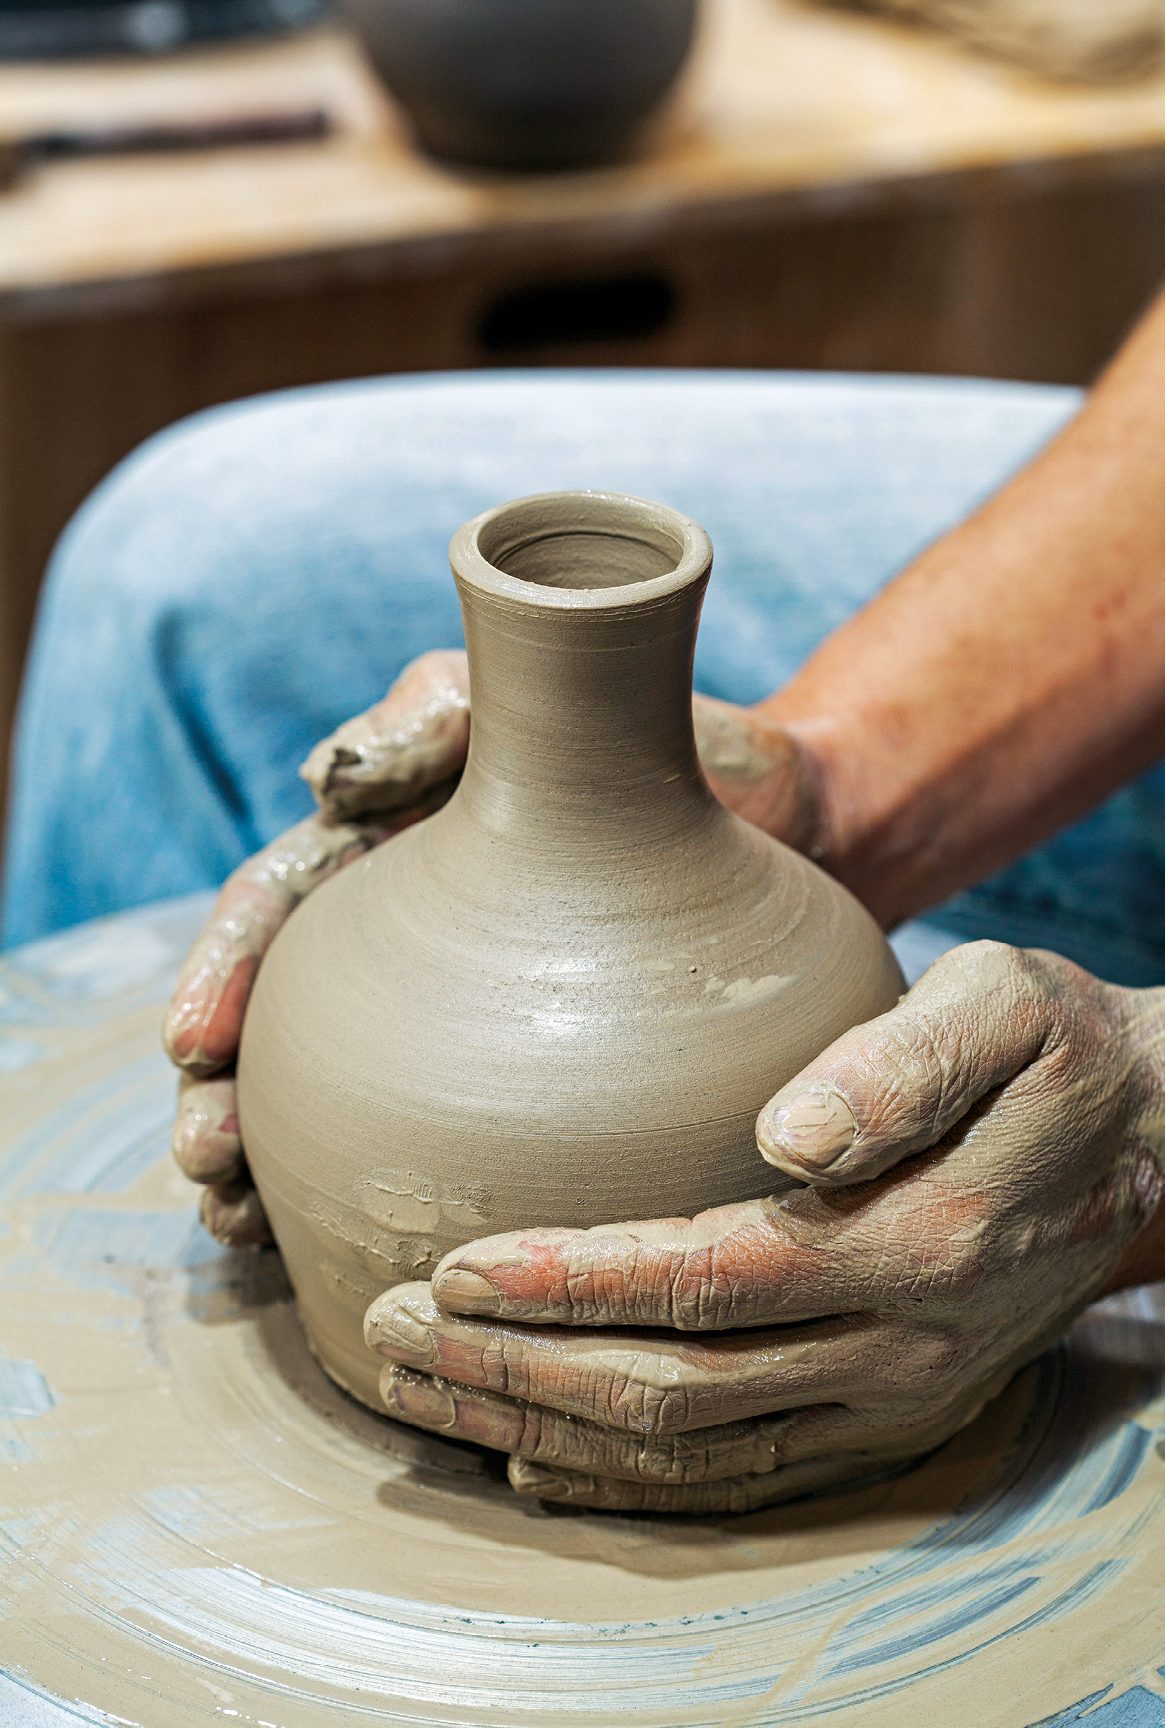 Fotografia. Destaque para duas mãos manipulando um vaso de cerâmica em produção.